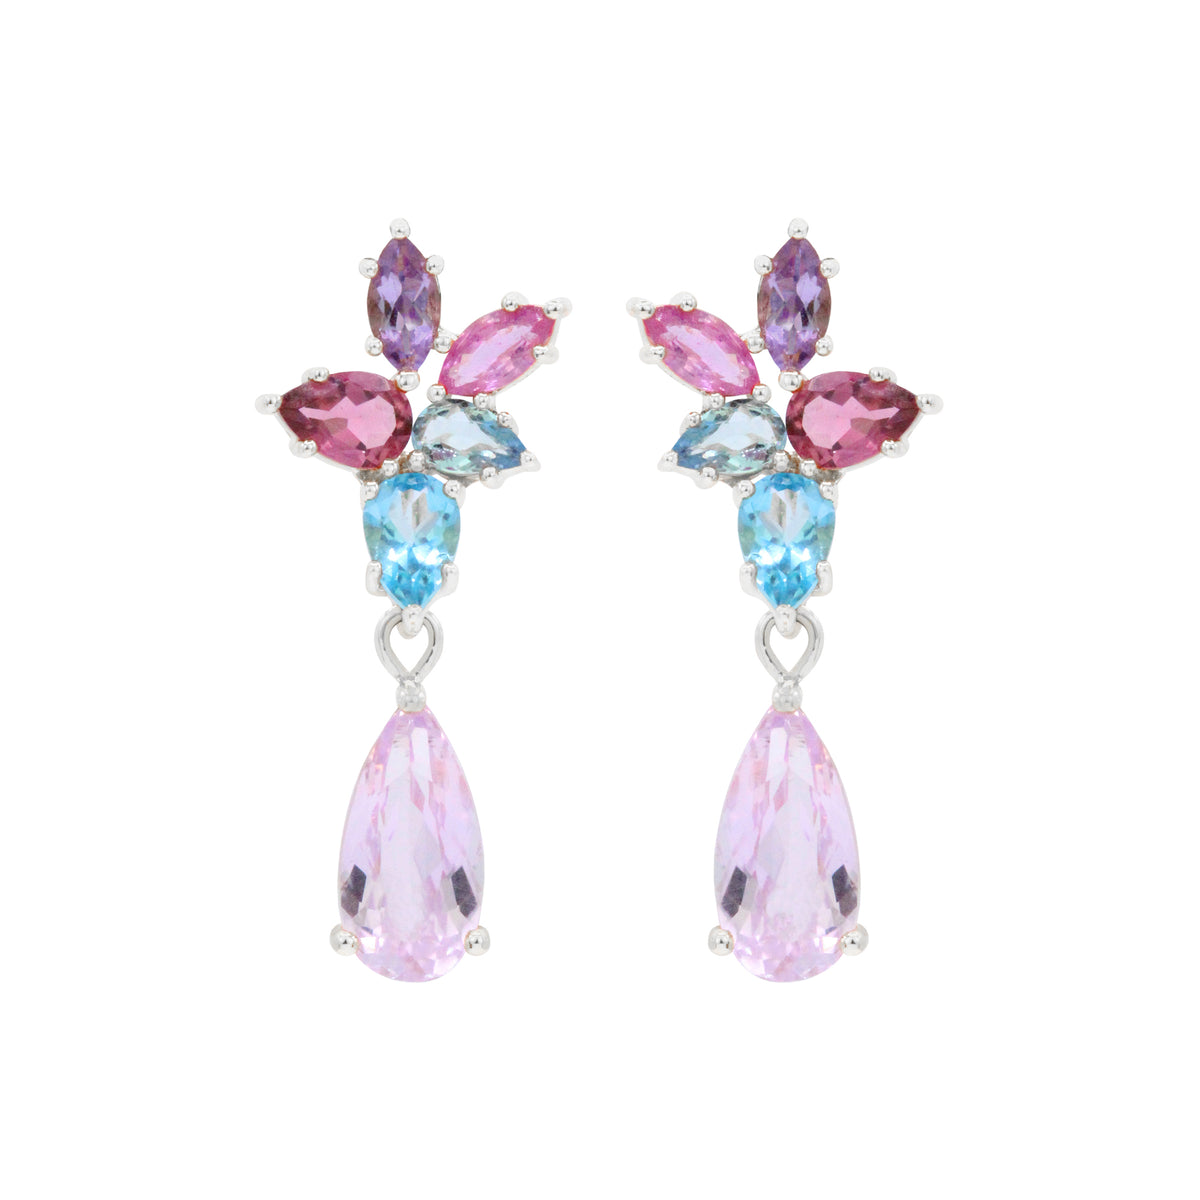 The Starlet 18K Cluster Gemstone Earrings